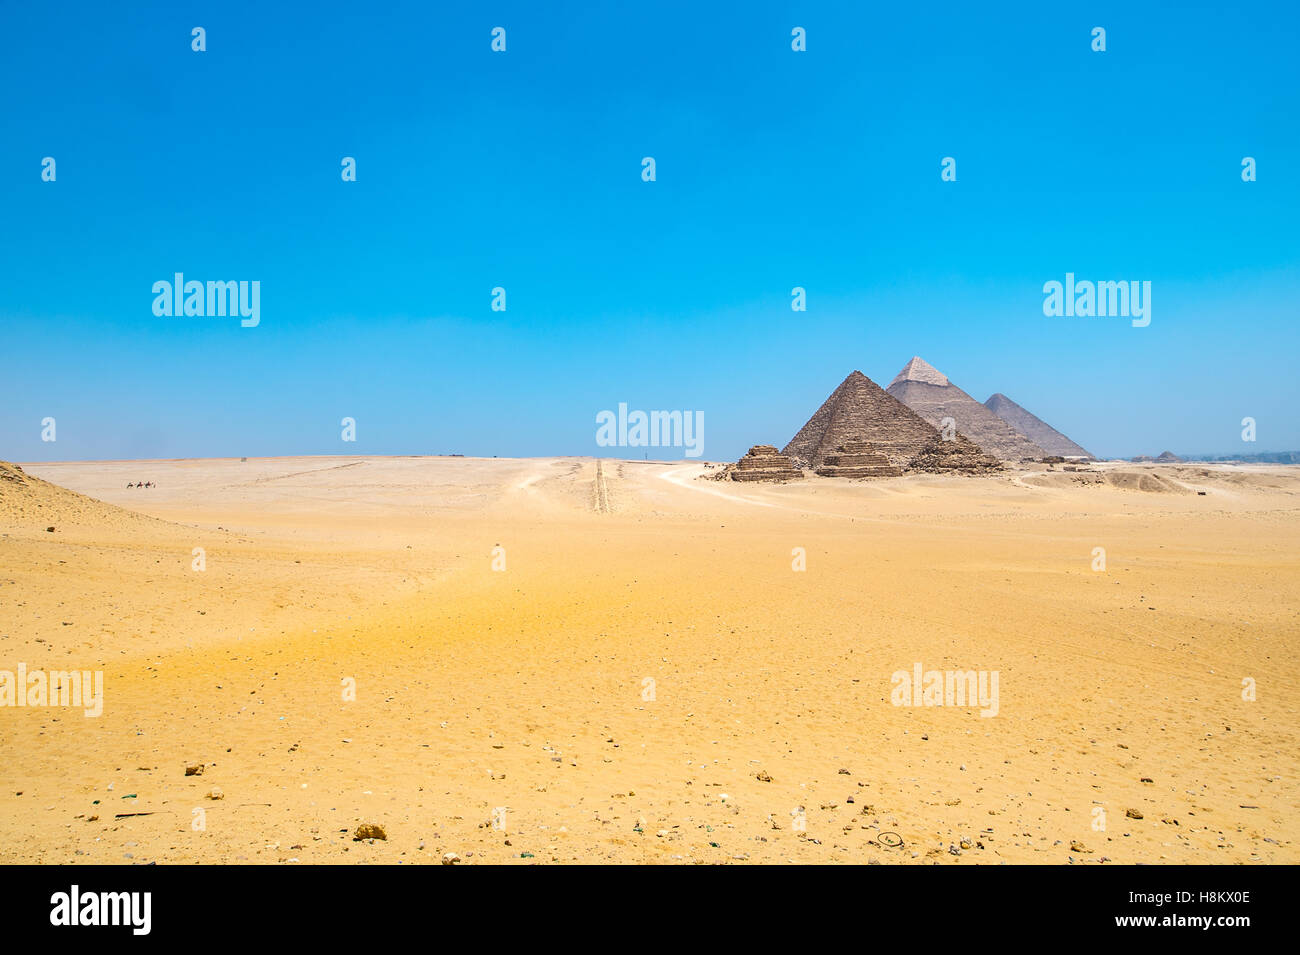 Le Caire, Egypte vaste désert du Sahara avec les trois grandes pyramides de Gizeh à l'arrière-plan contre un ciel bleu clair. De gauche à r Banque D'Images